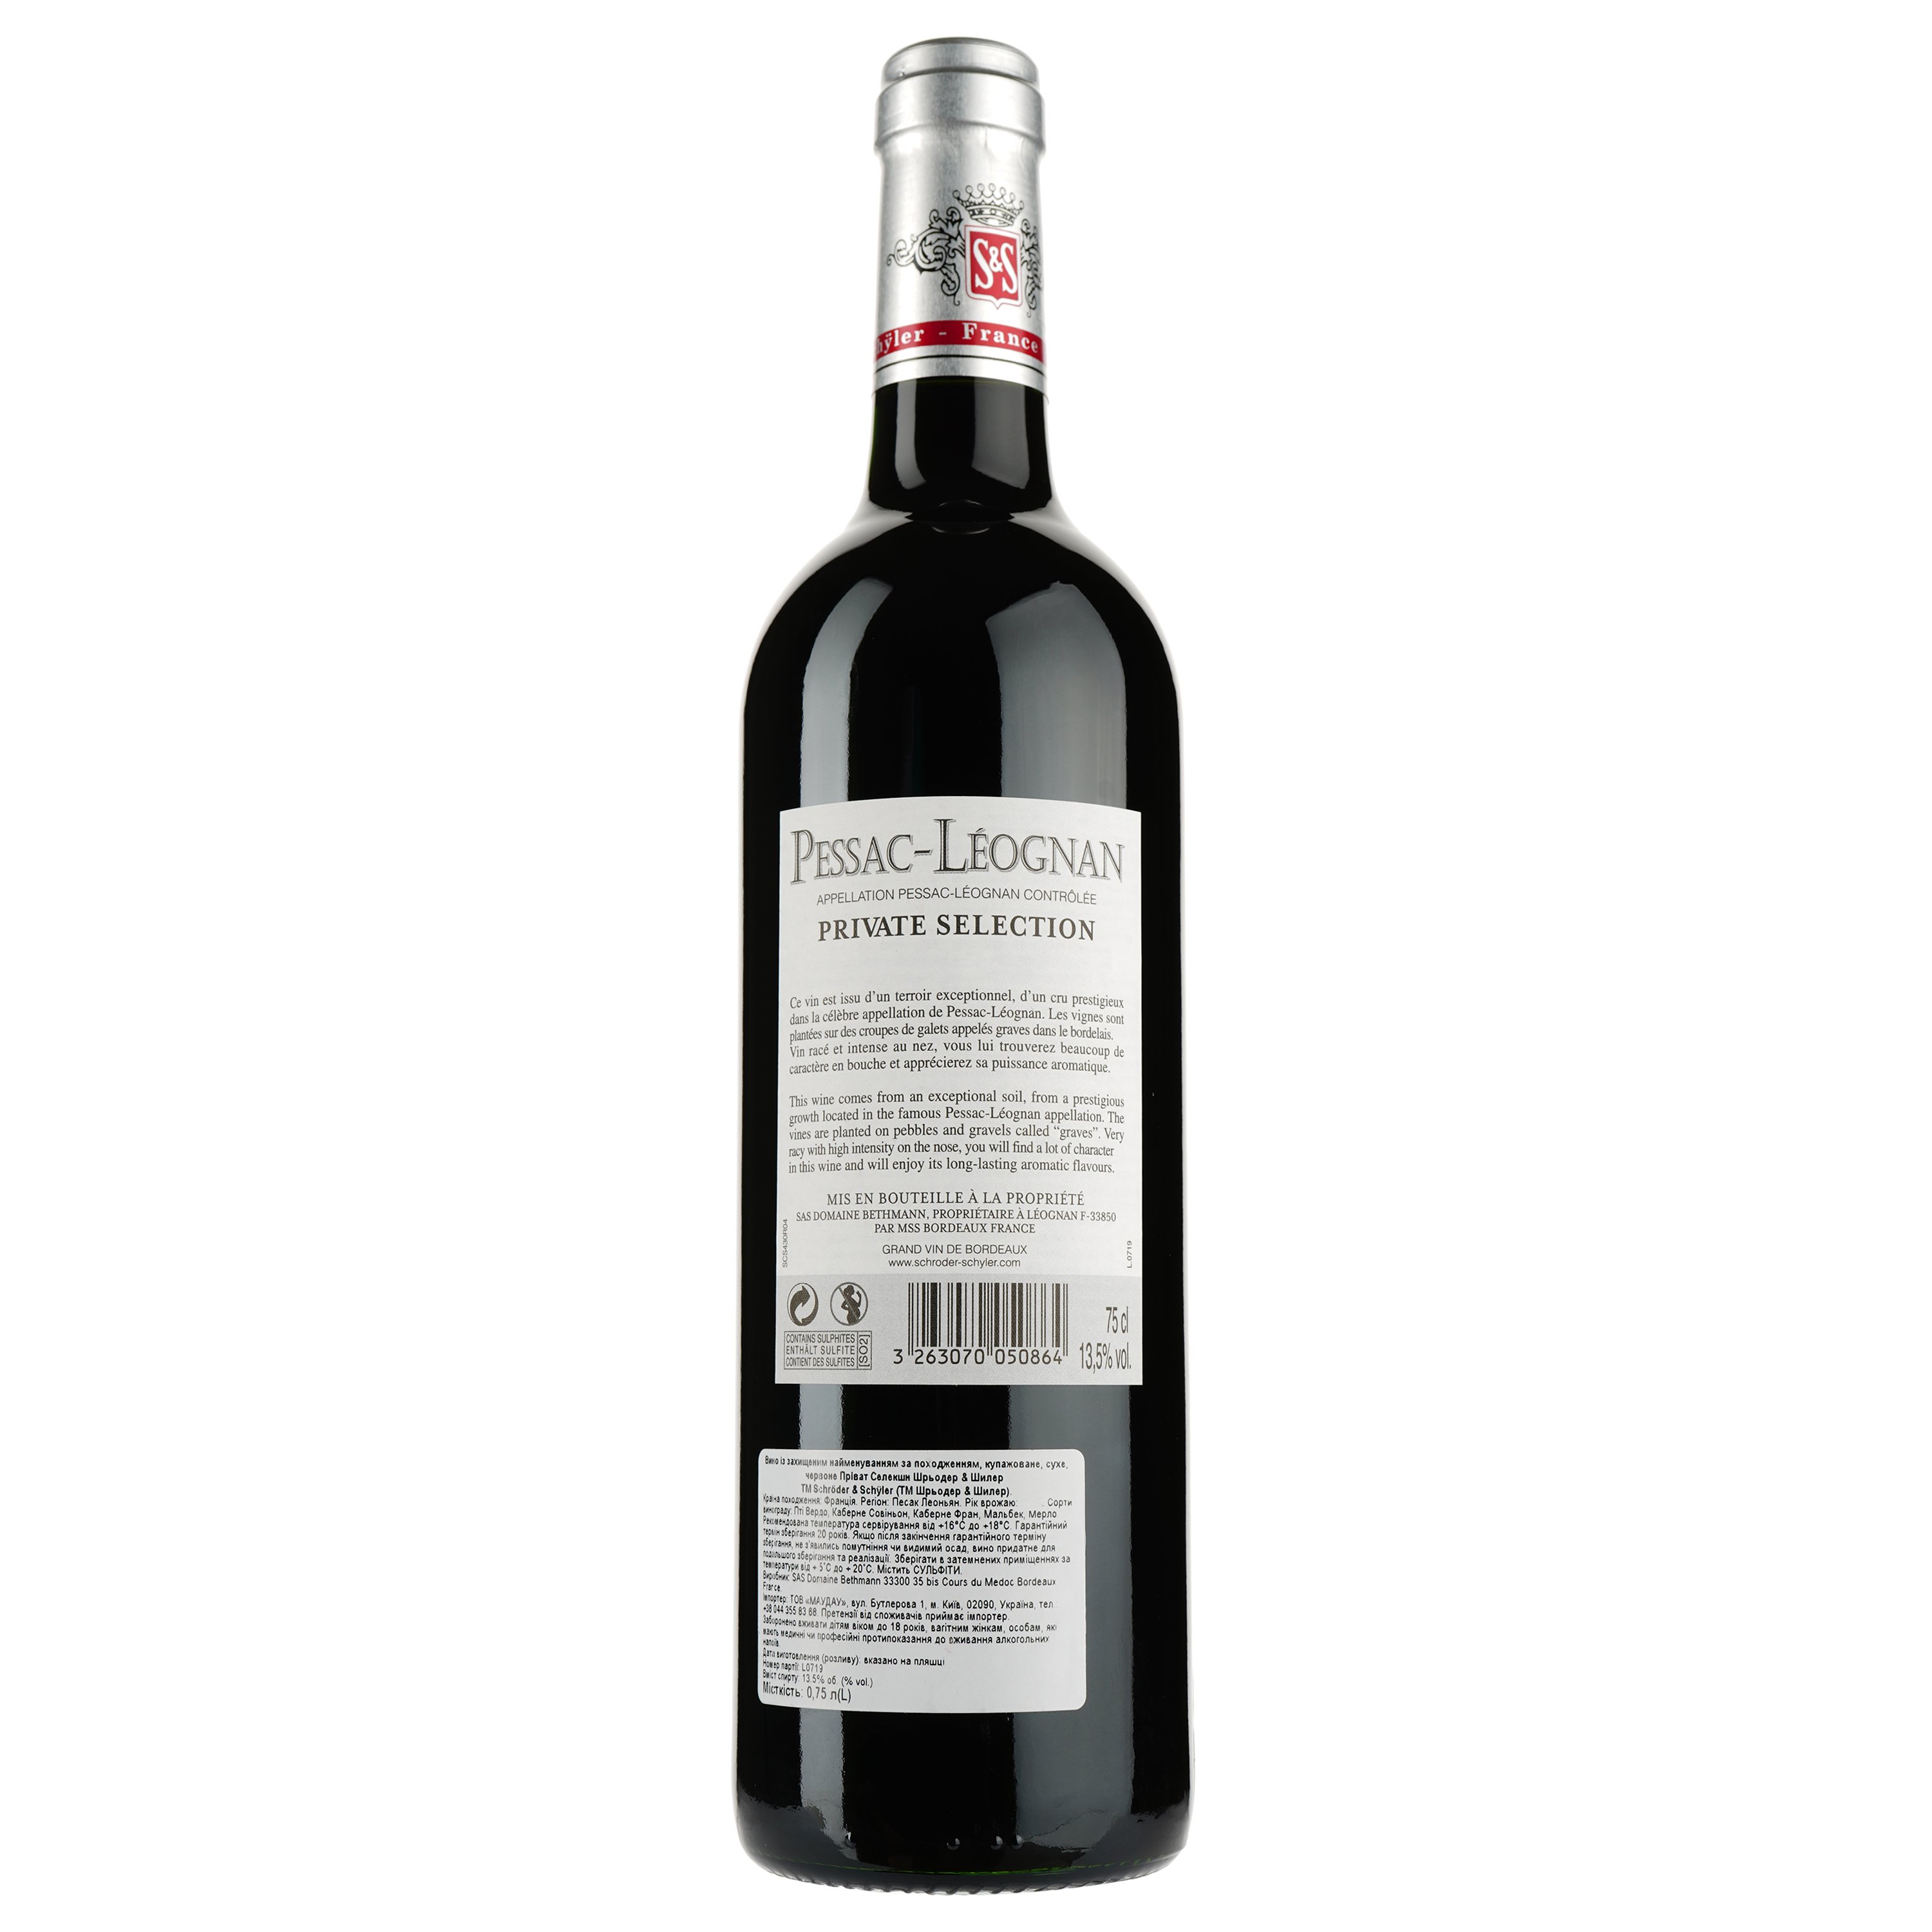 Вино Private Selection Schröder&Schÿler AOP Pessac-Leognan 2013, красное, сухое, 0,75 л - фото 2